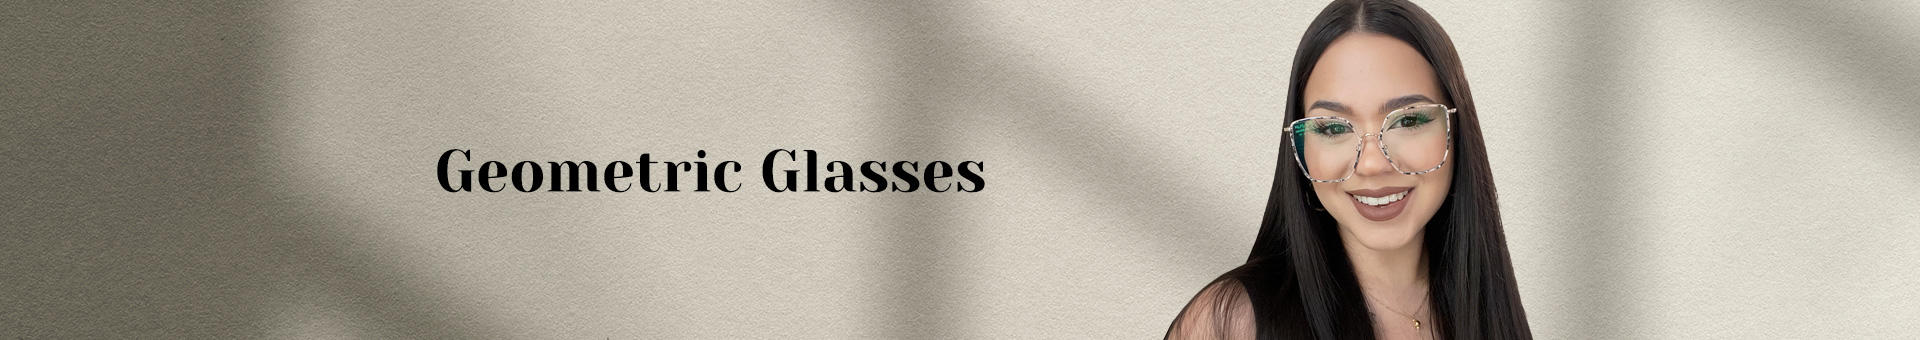 Geometric Glasses